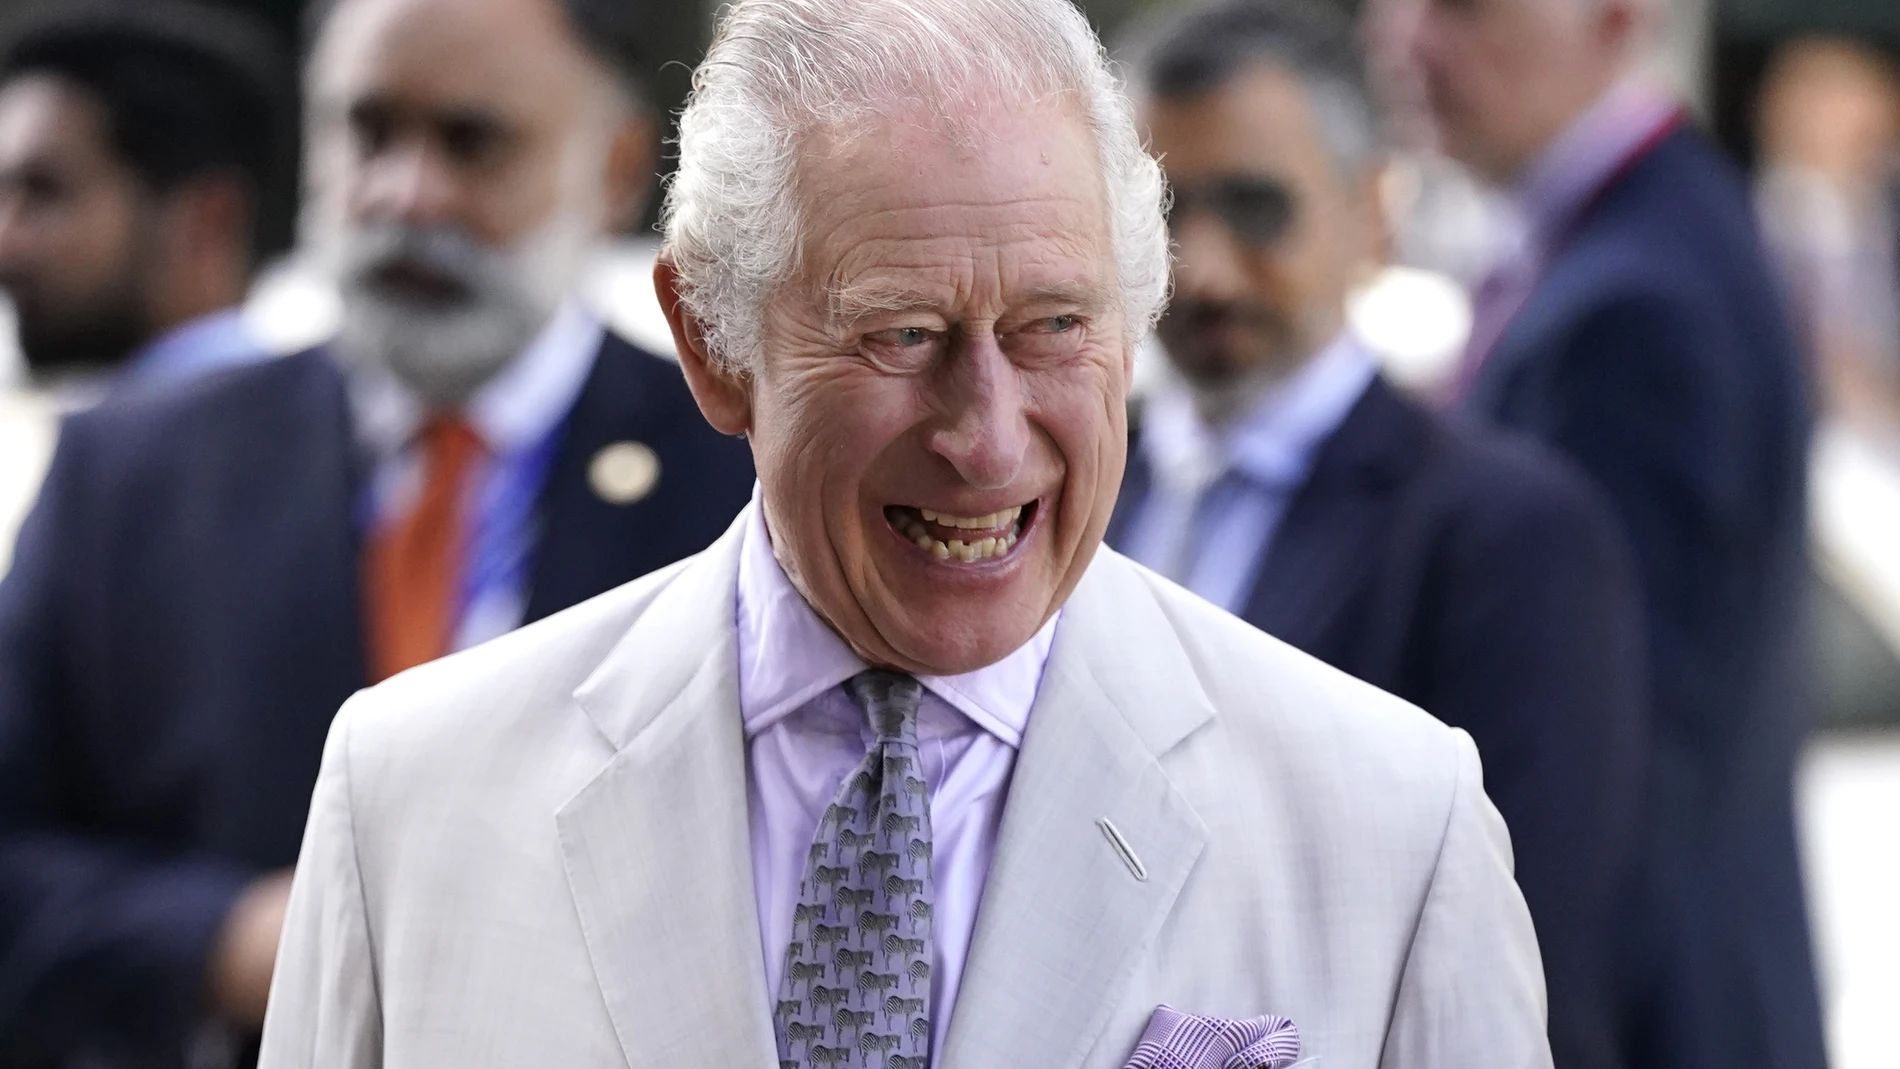 R.Unido.- El rey Carlos III será tratado la próxima semana por problemas de próstata